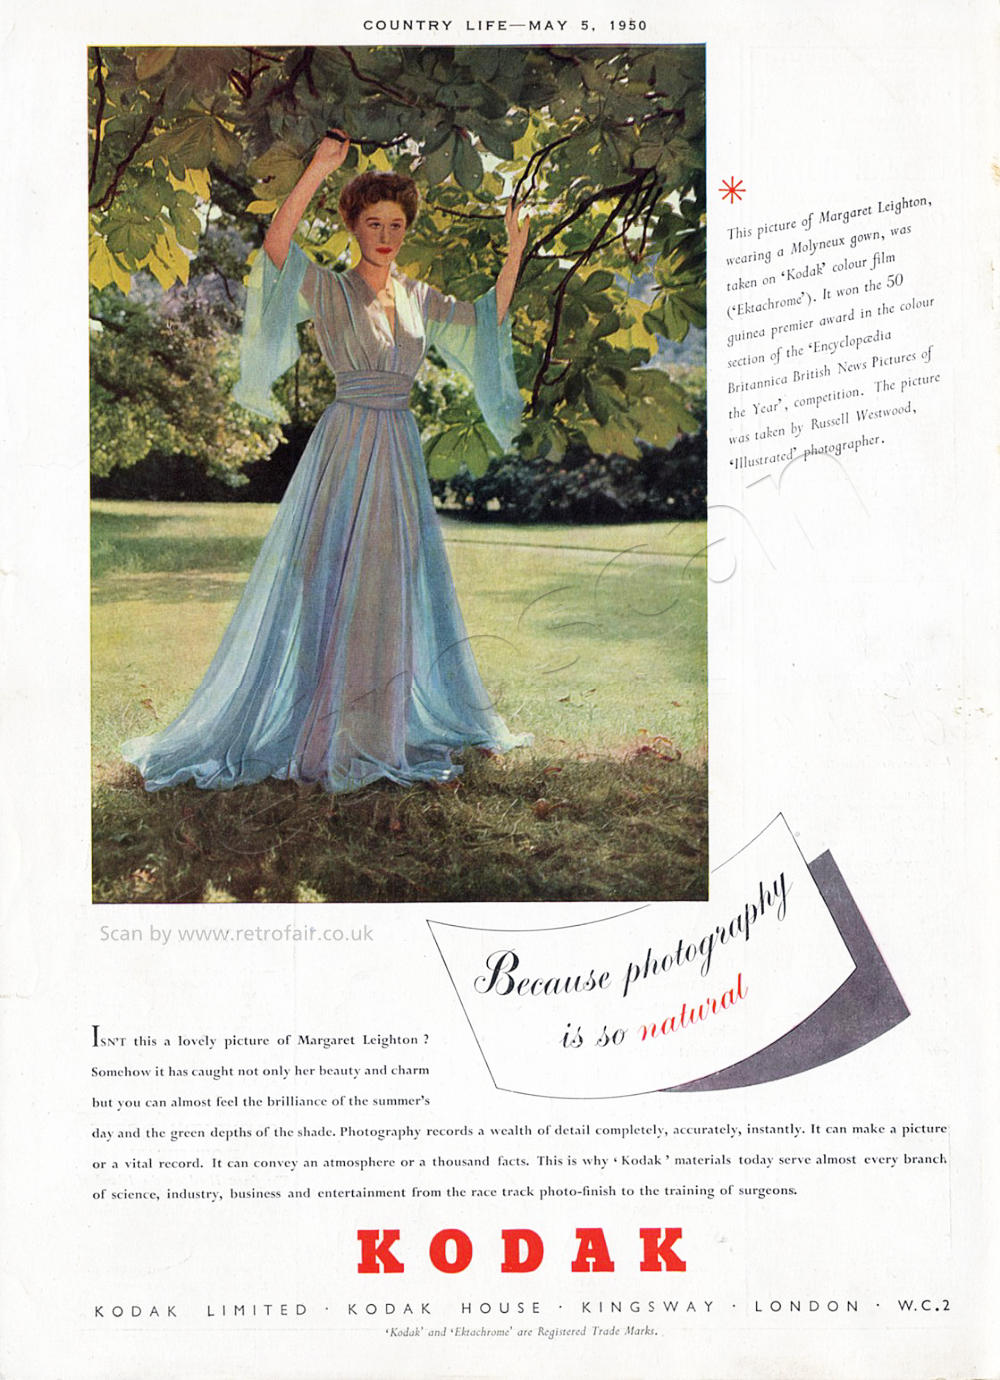 1950 Kodak Margaret Leighton advert